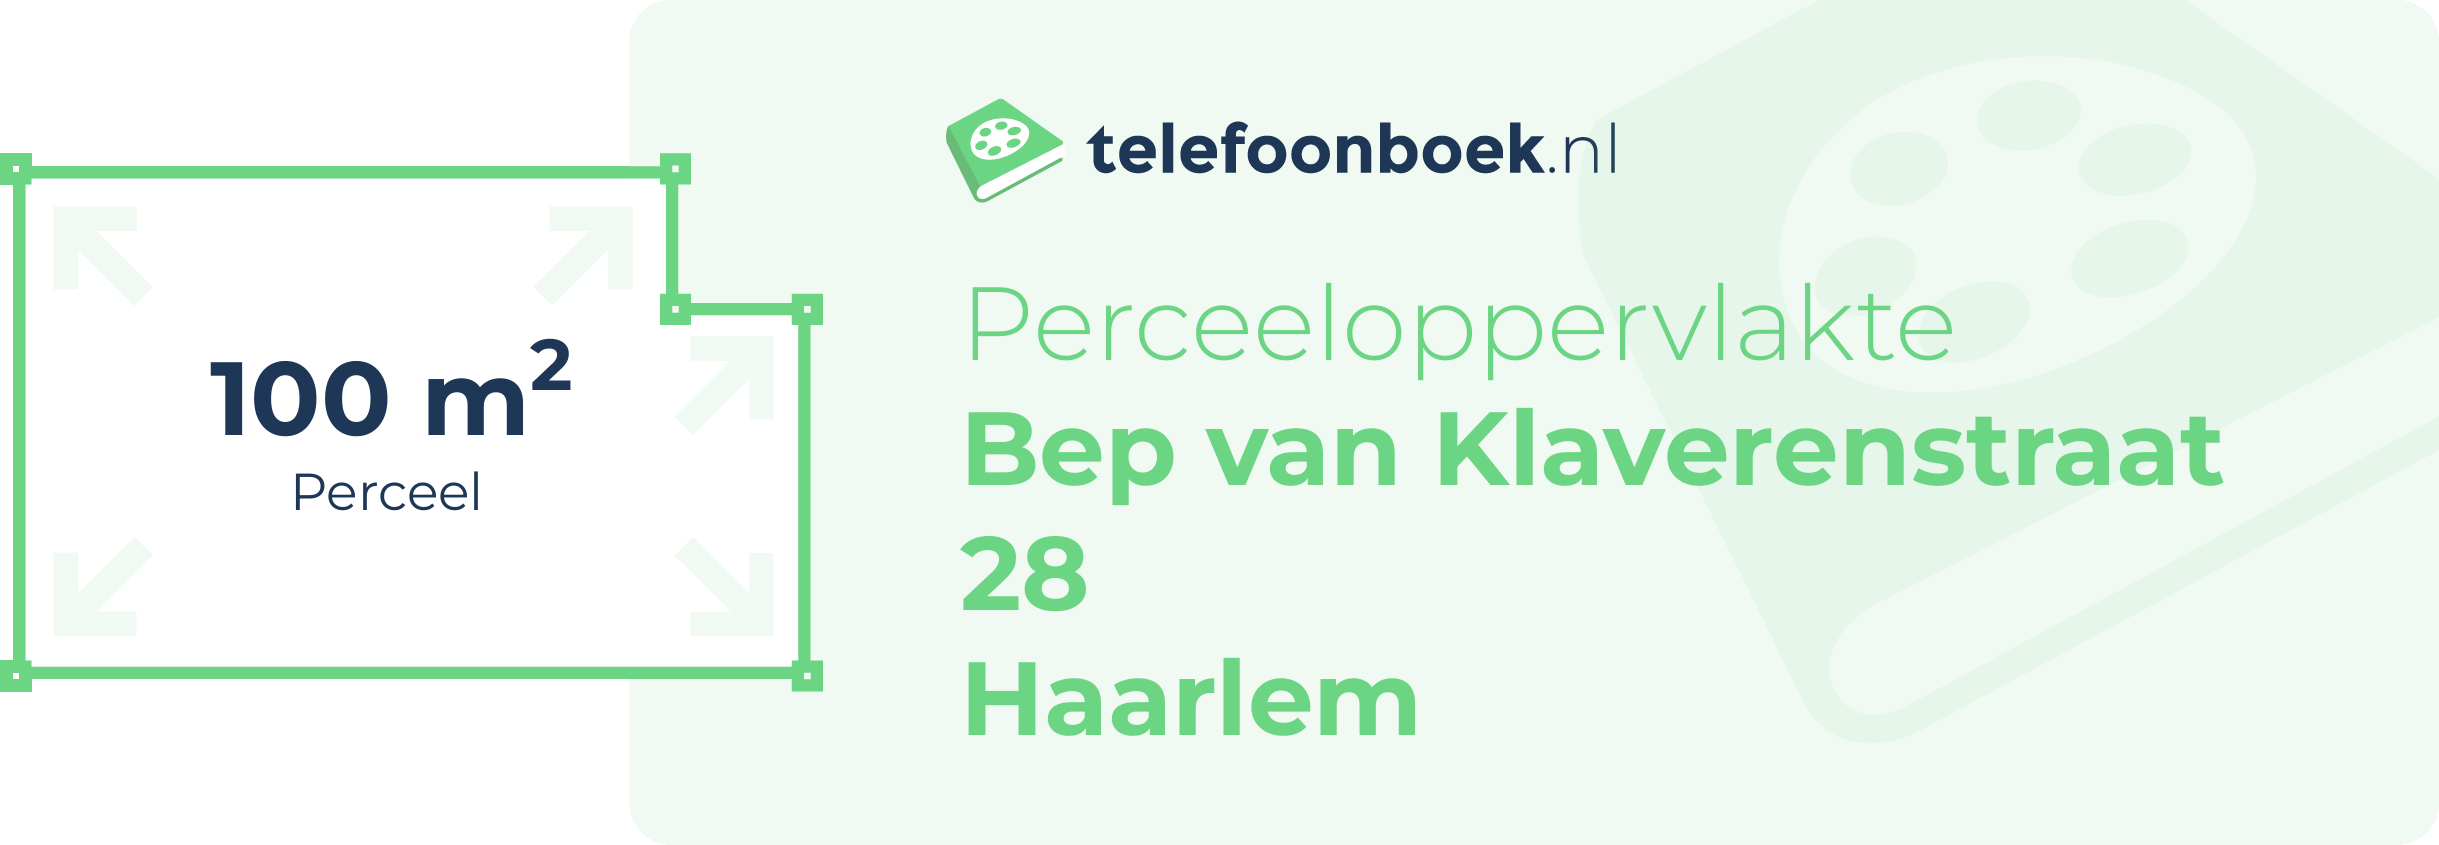 Perceeloppervlakte Bep Van Klaverenstraat 28 Haarlem